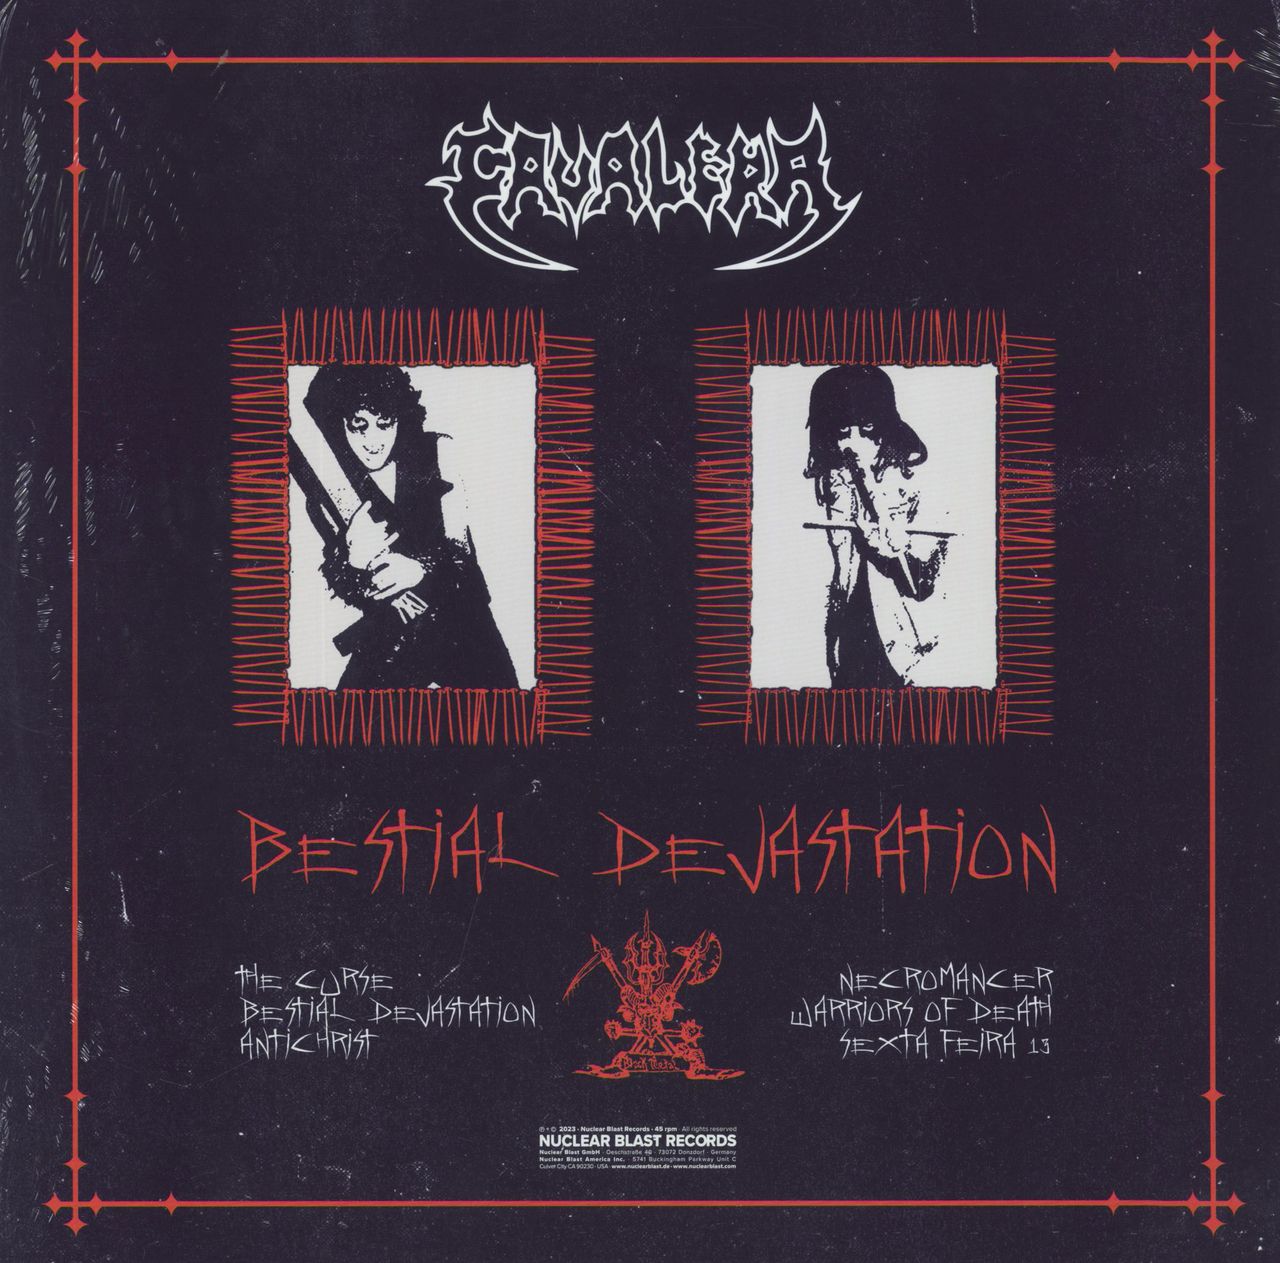 CAVALERA - Bestial Devastation - CD